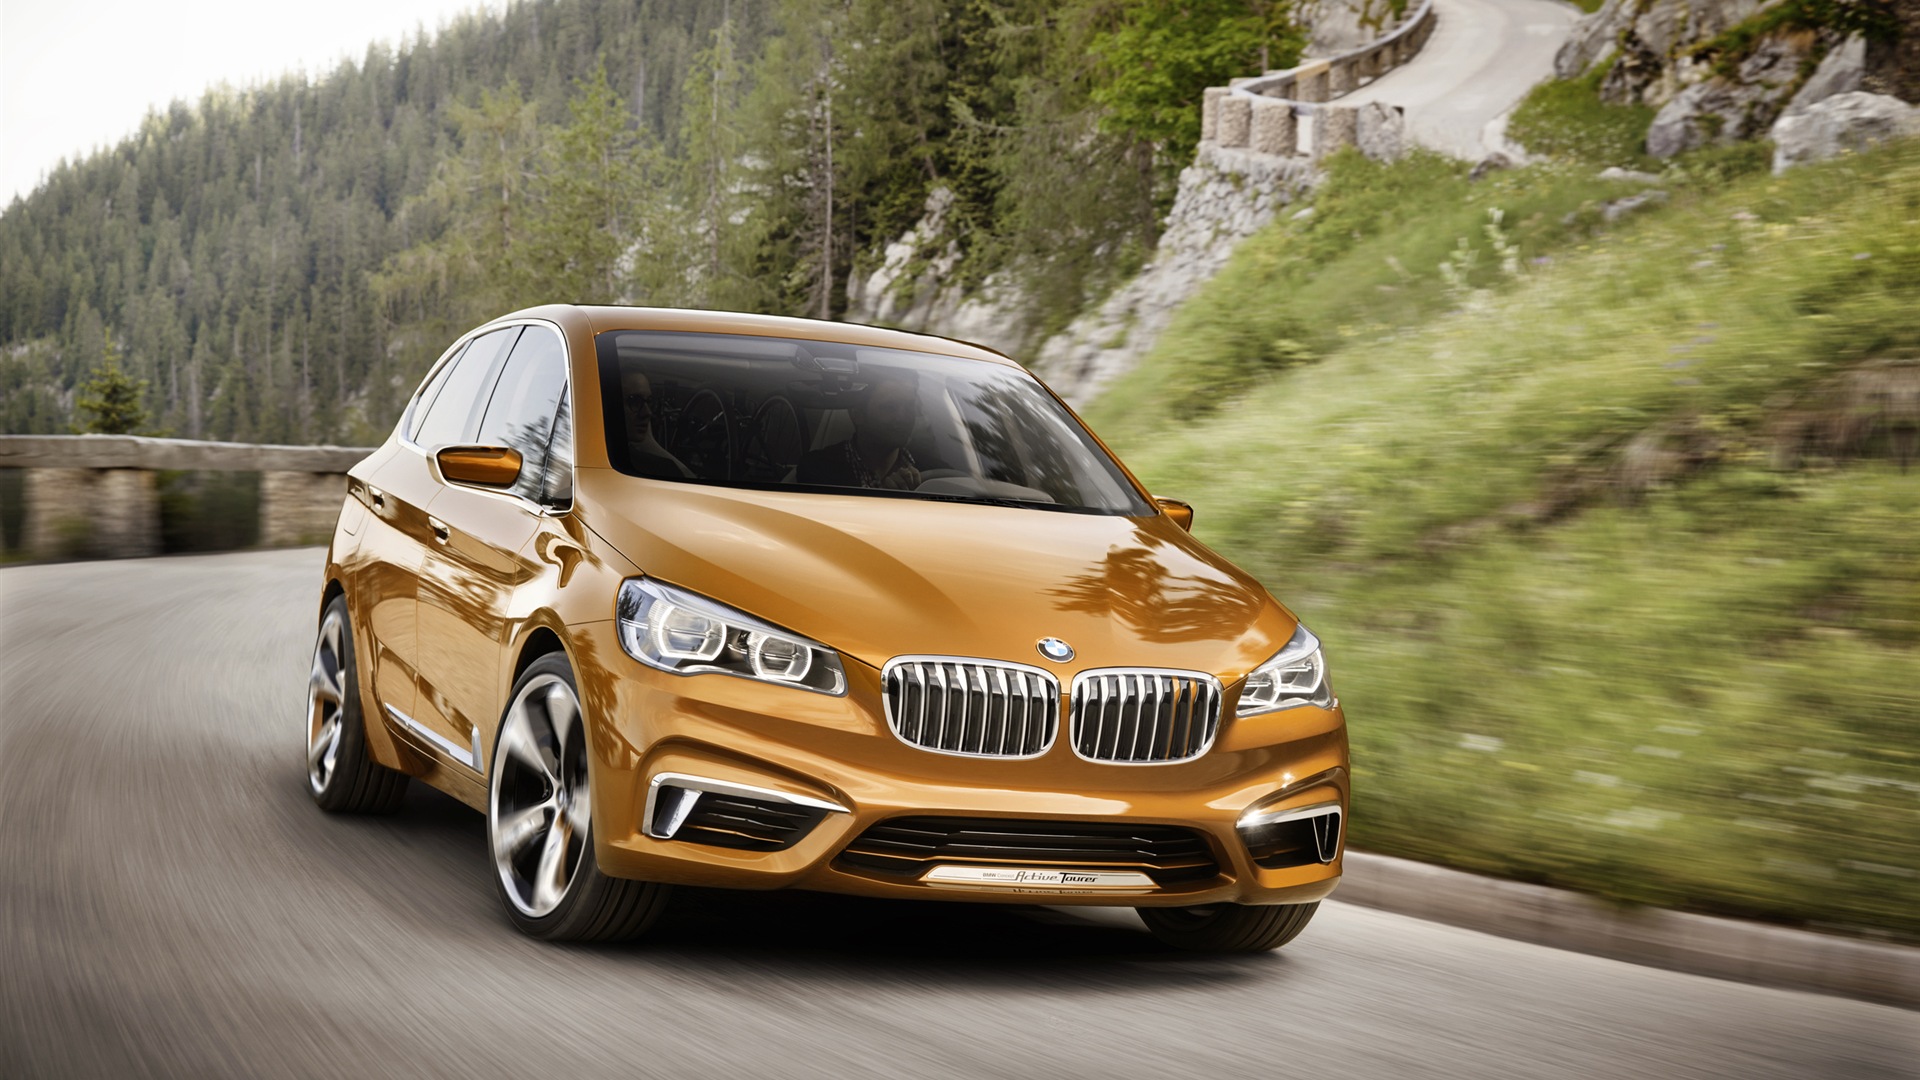 2013 BMW Concept activos Tourer fondos de pantalla de alta definición #5 - 1920x1080